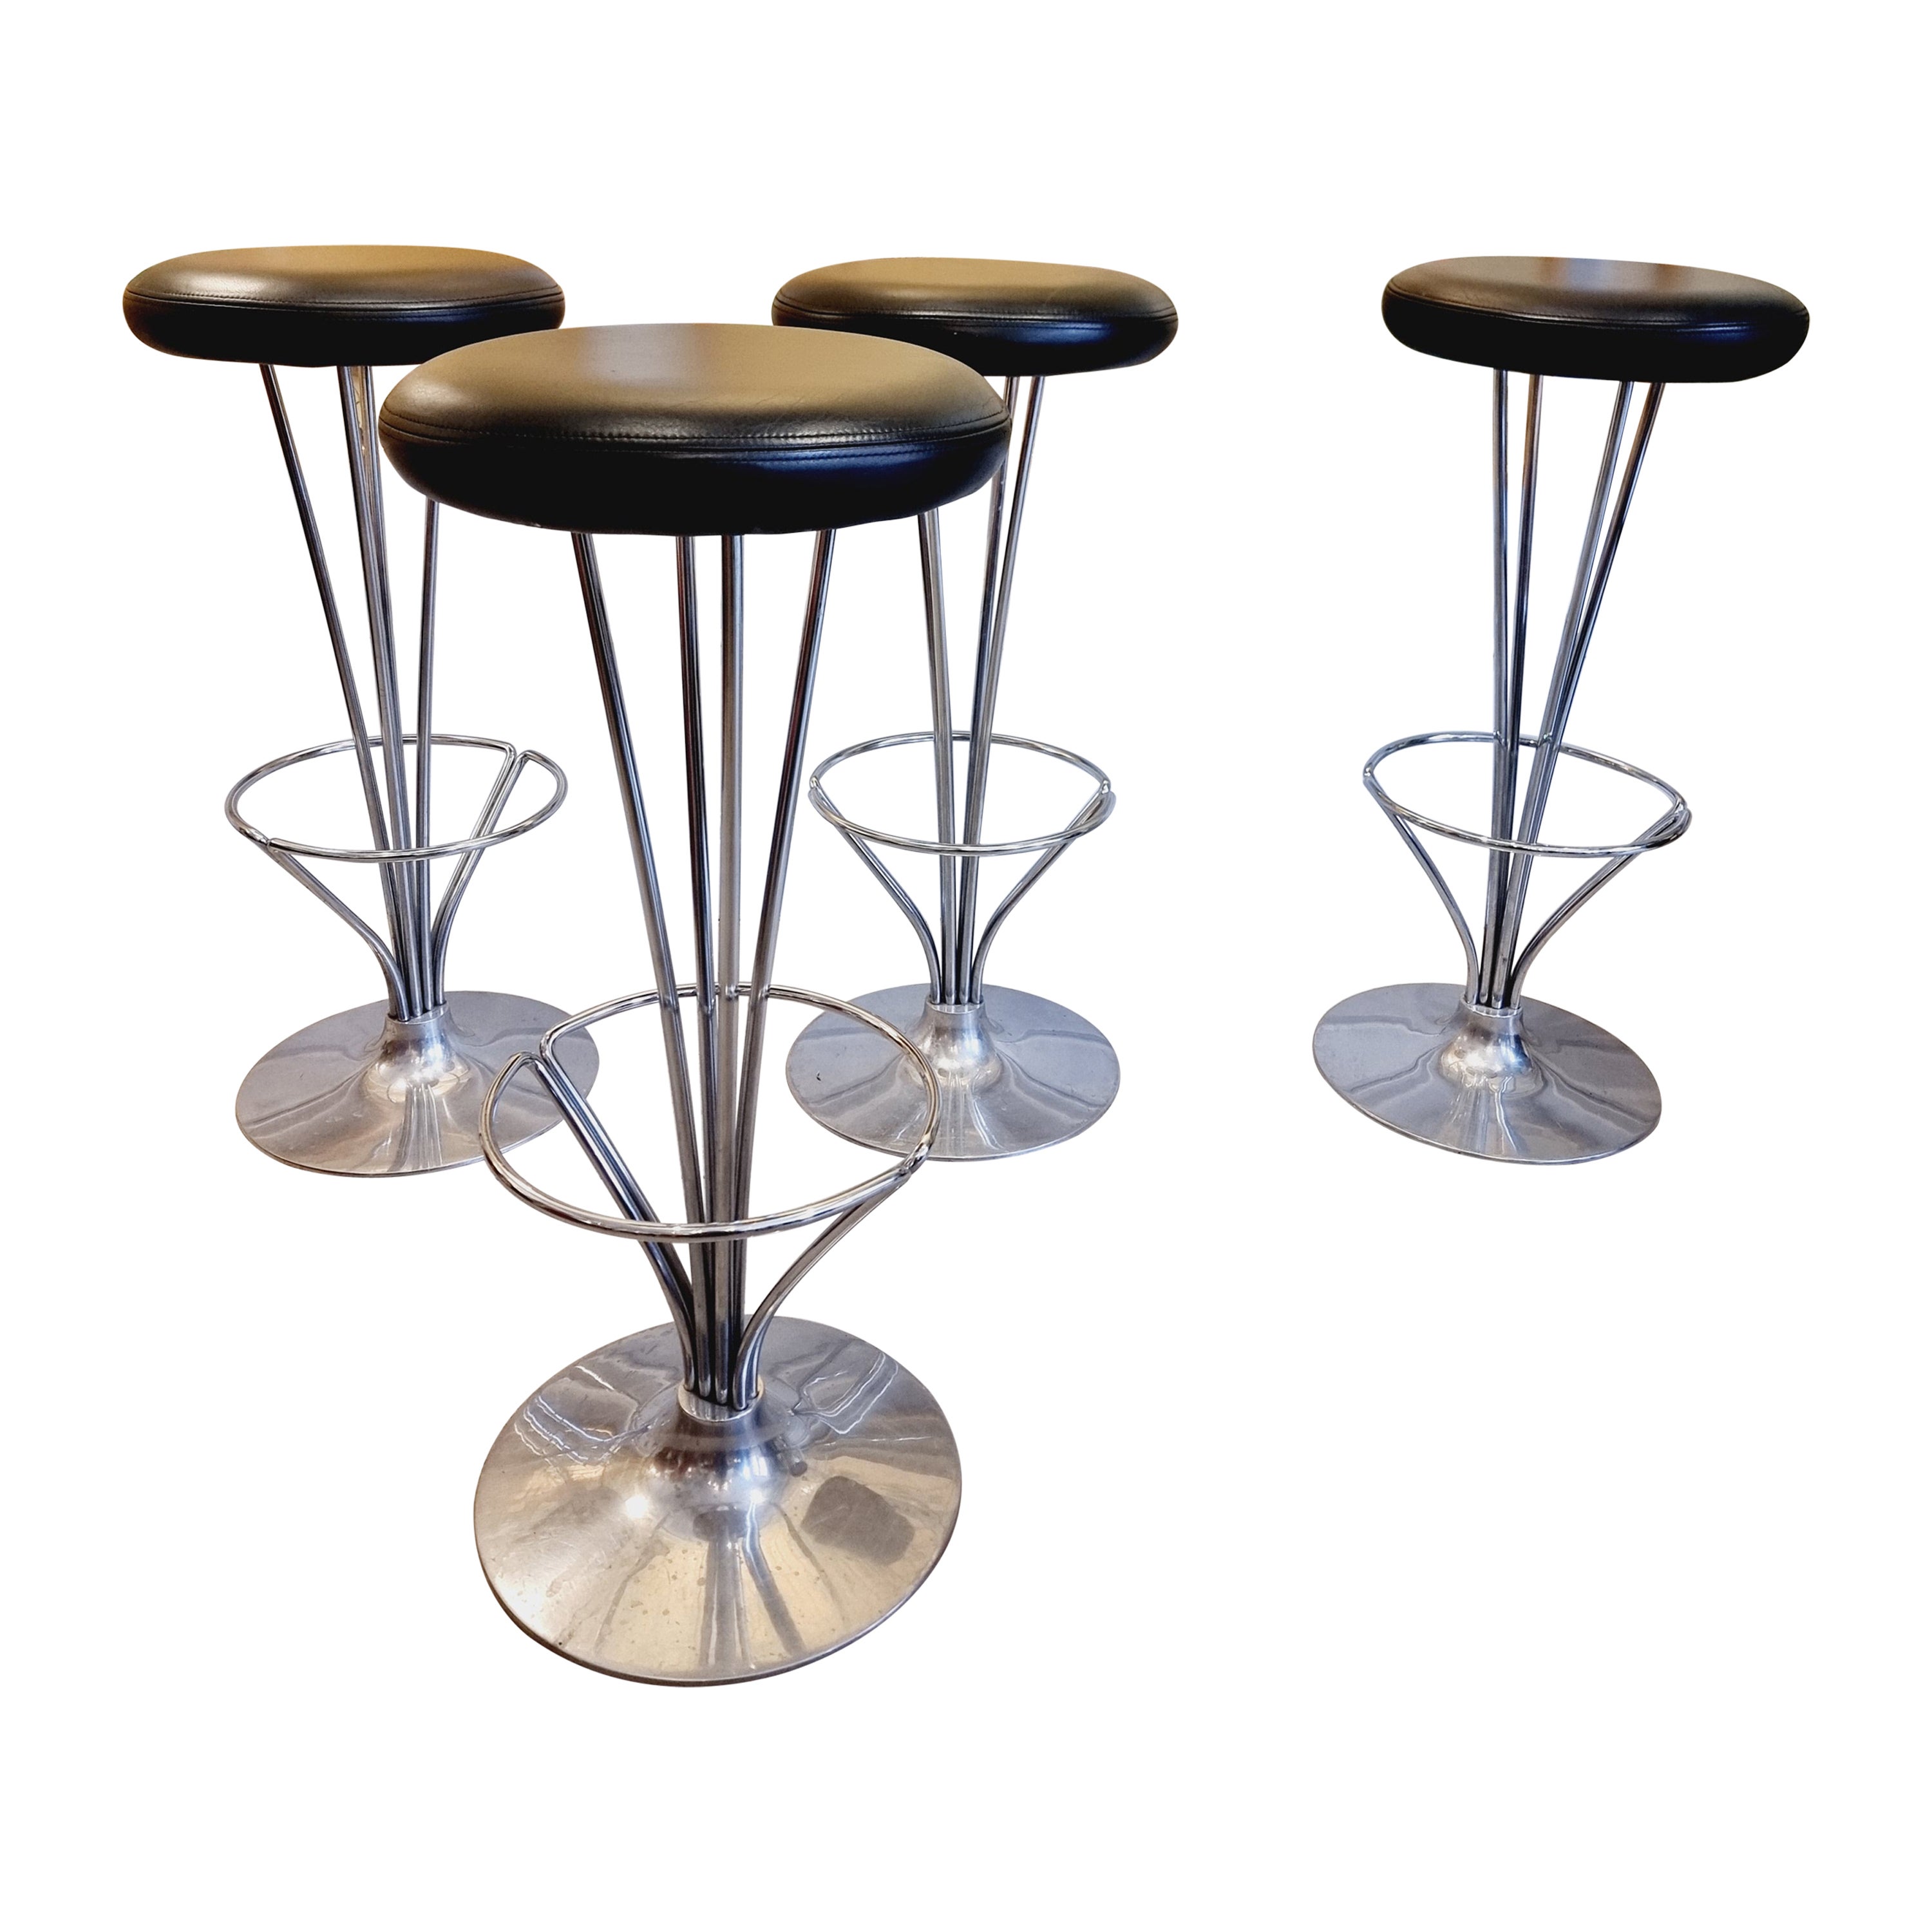 Piet Hein, set of four bar stools, Scandinavian / Danish Modern, Fritz Hansen